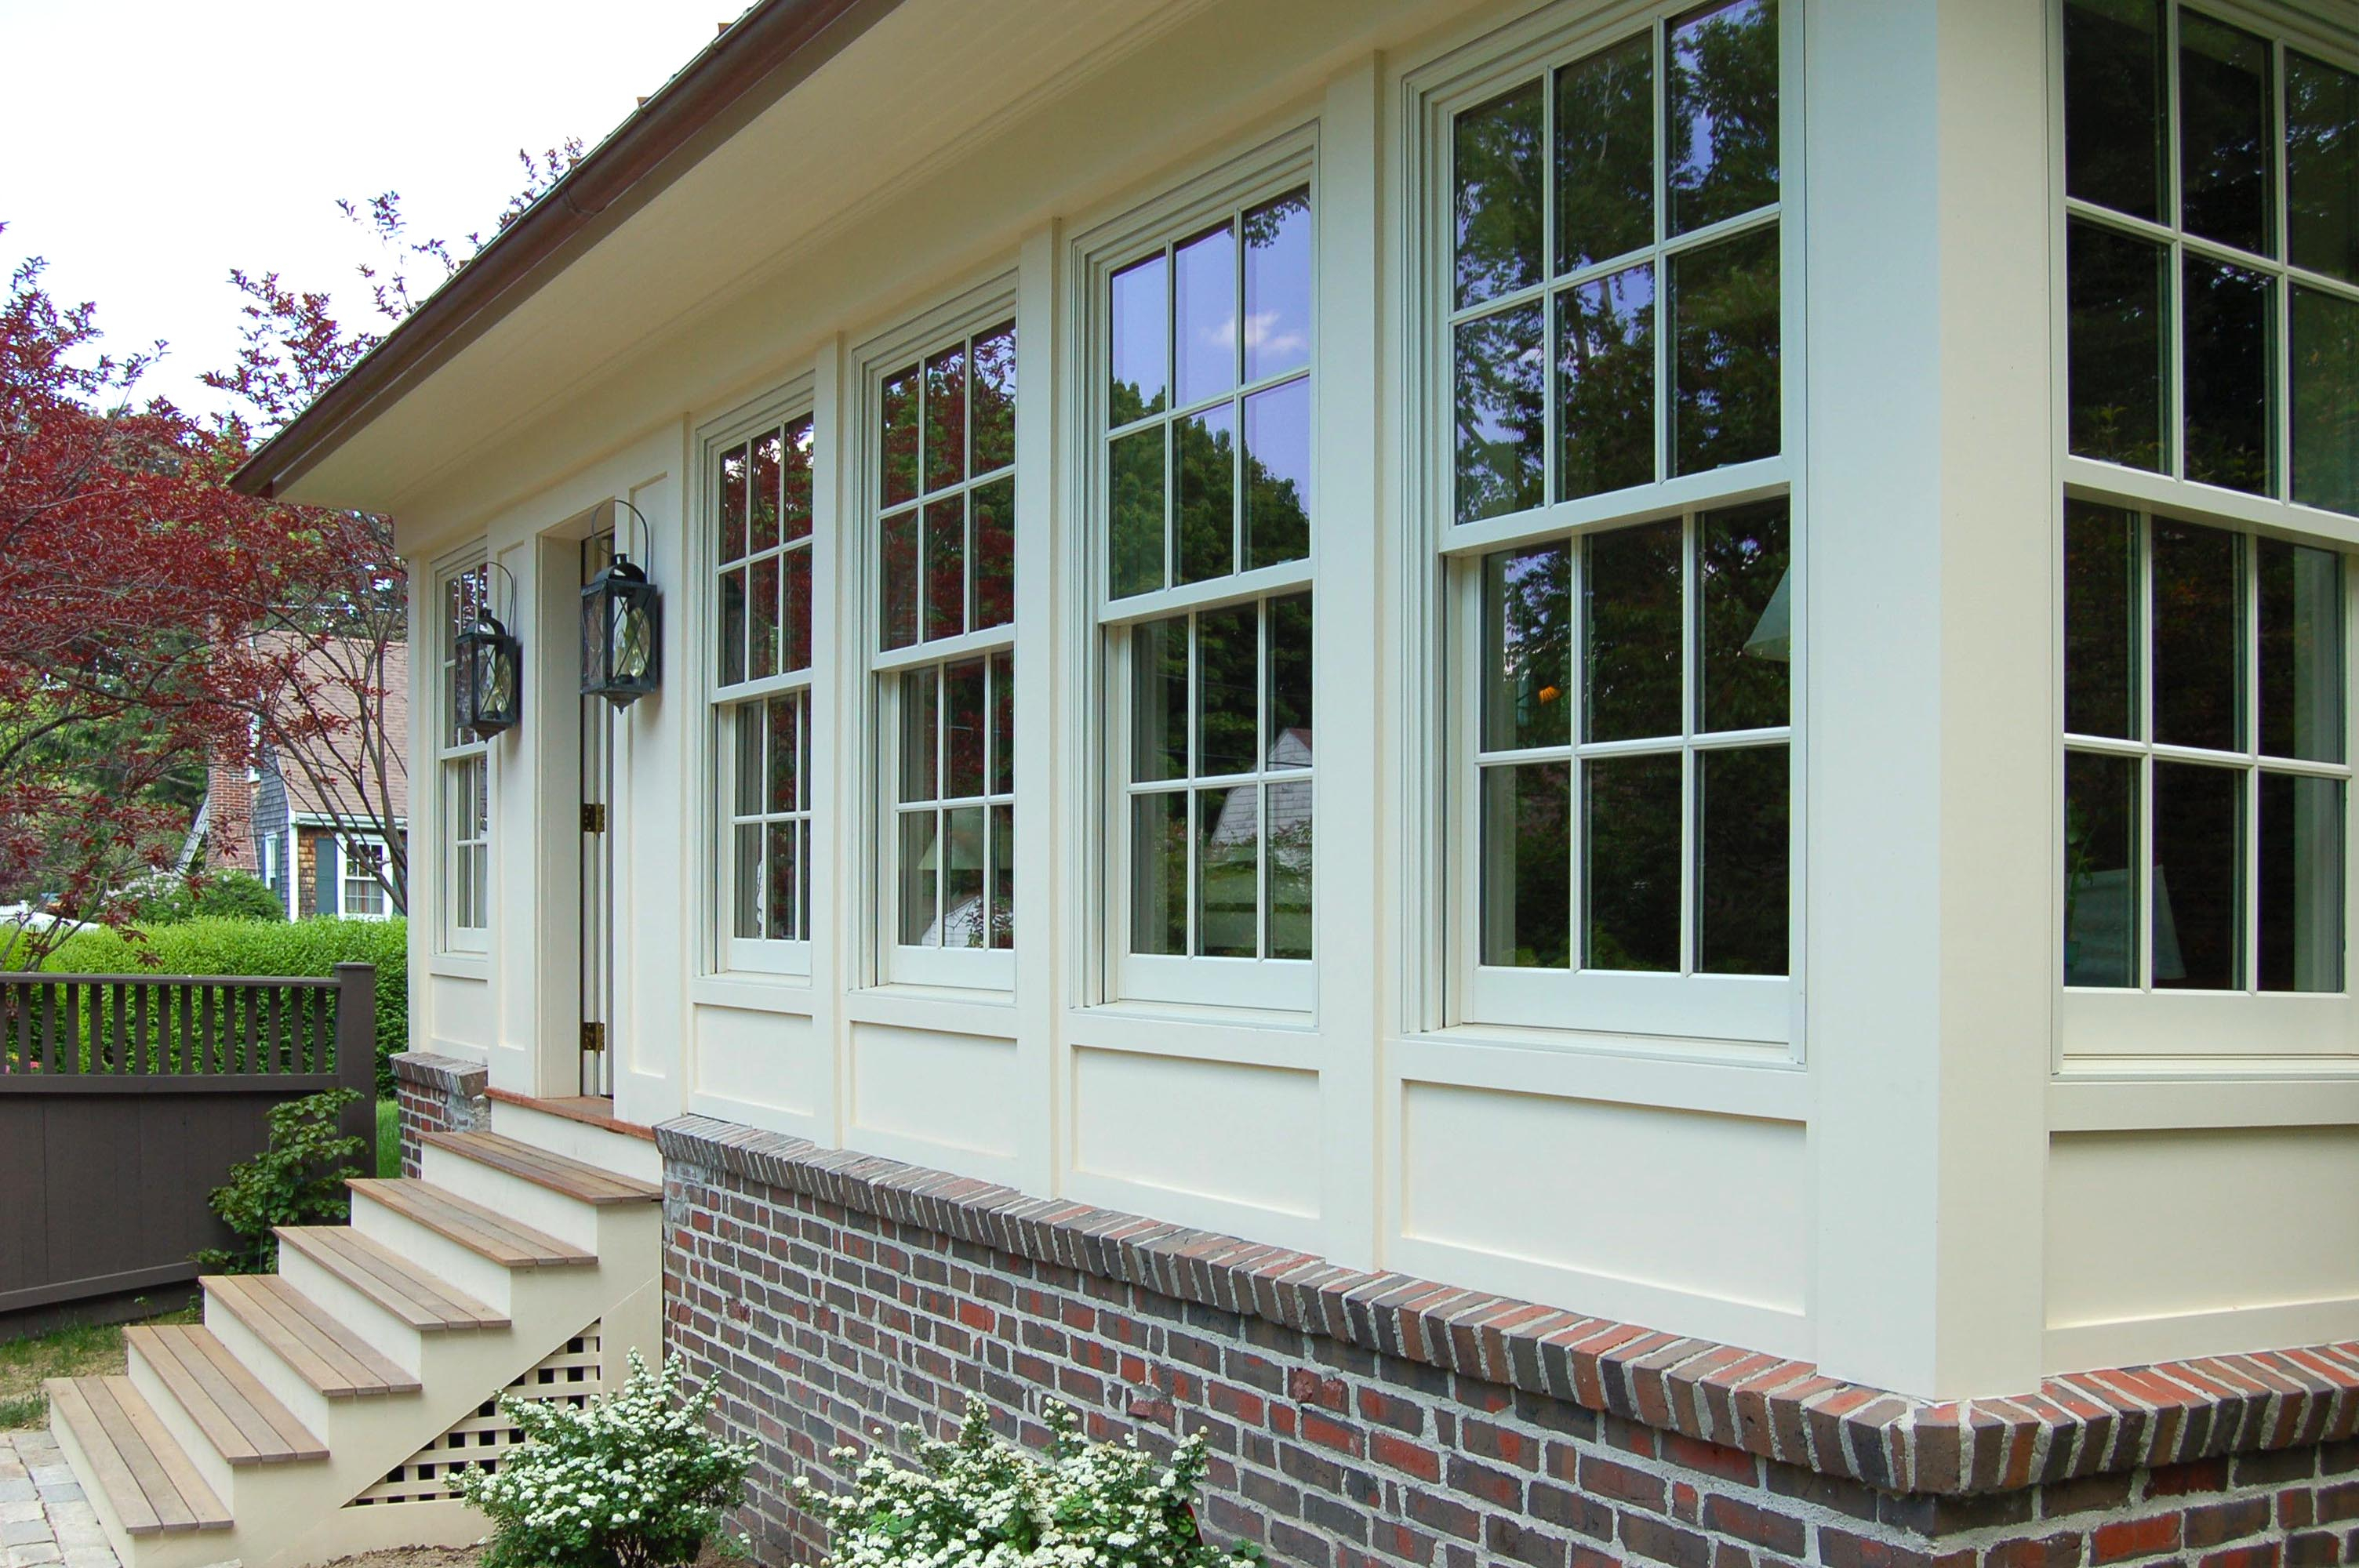 Home Ideas Enclosed Front Porch Design Decor Glassenclosed Porch inside measurements 3008 X 2000